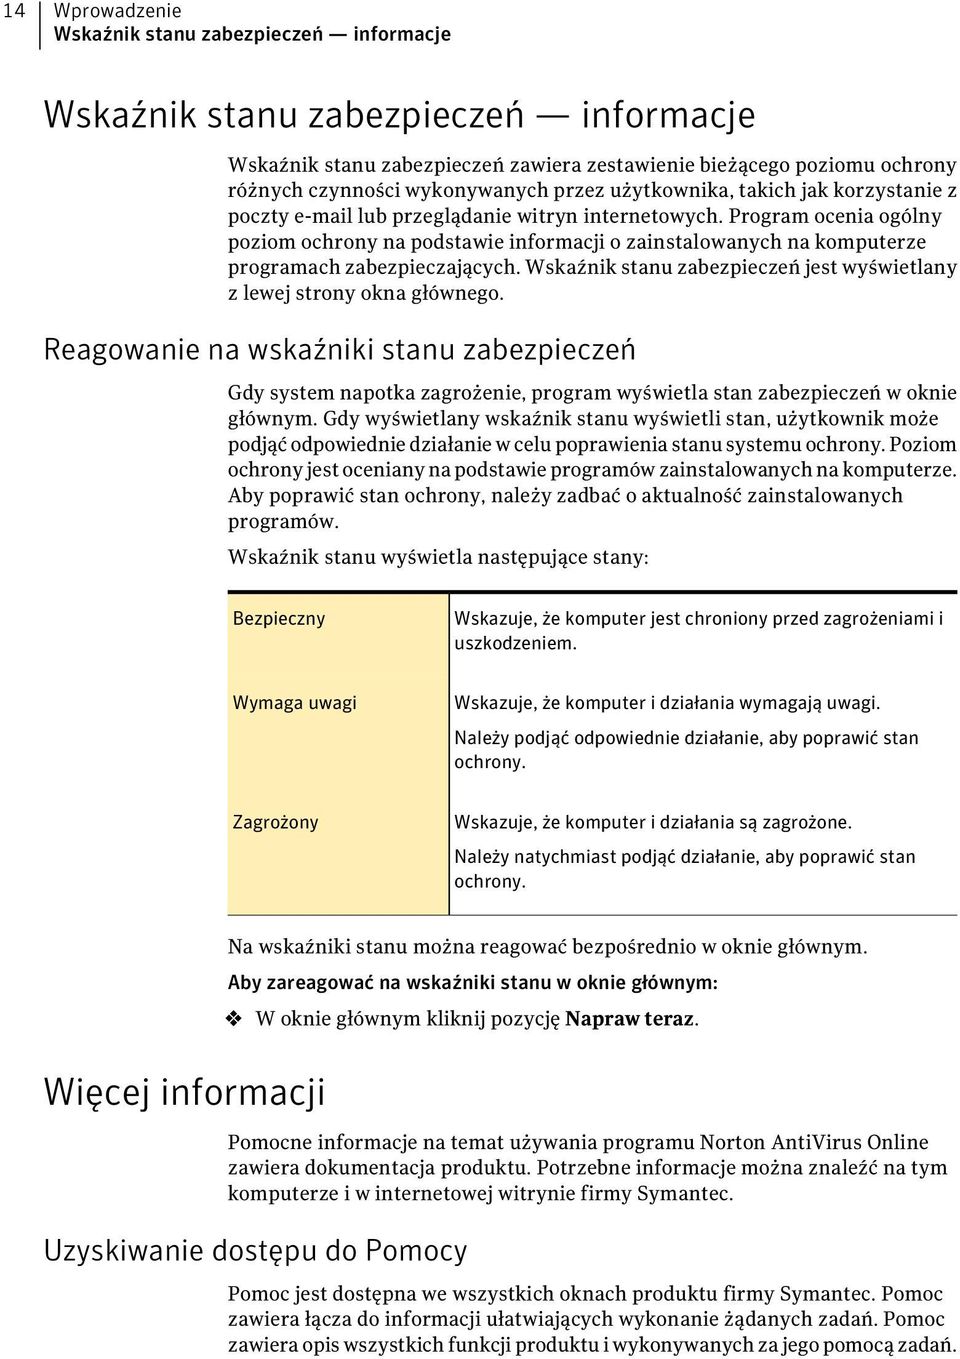 Program ocenia ogólny poziom ochrony na podstawie informacji o zainstalowanych na komputerze programach zabezpieczających. Wskaźnik stanu zabezpieczeń jest wyświetlany z lewej strony okna głównego.